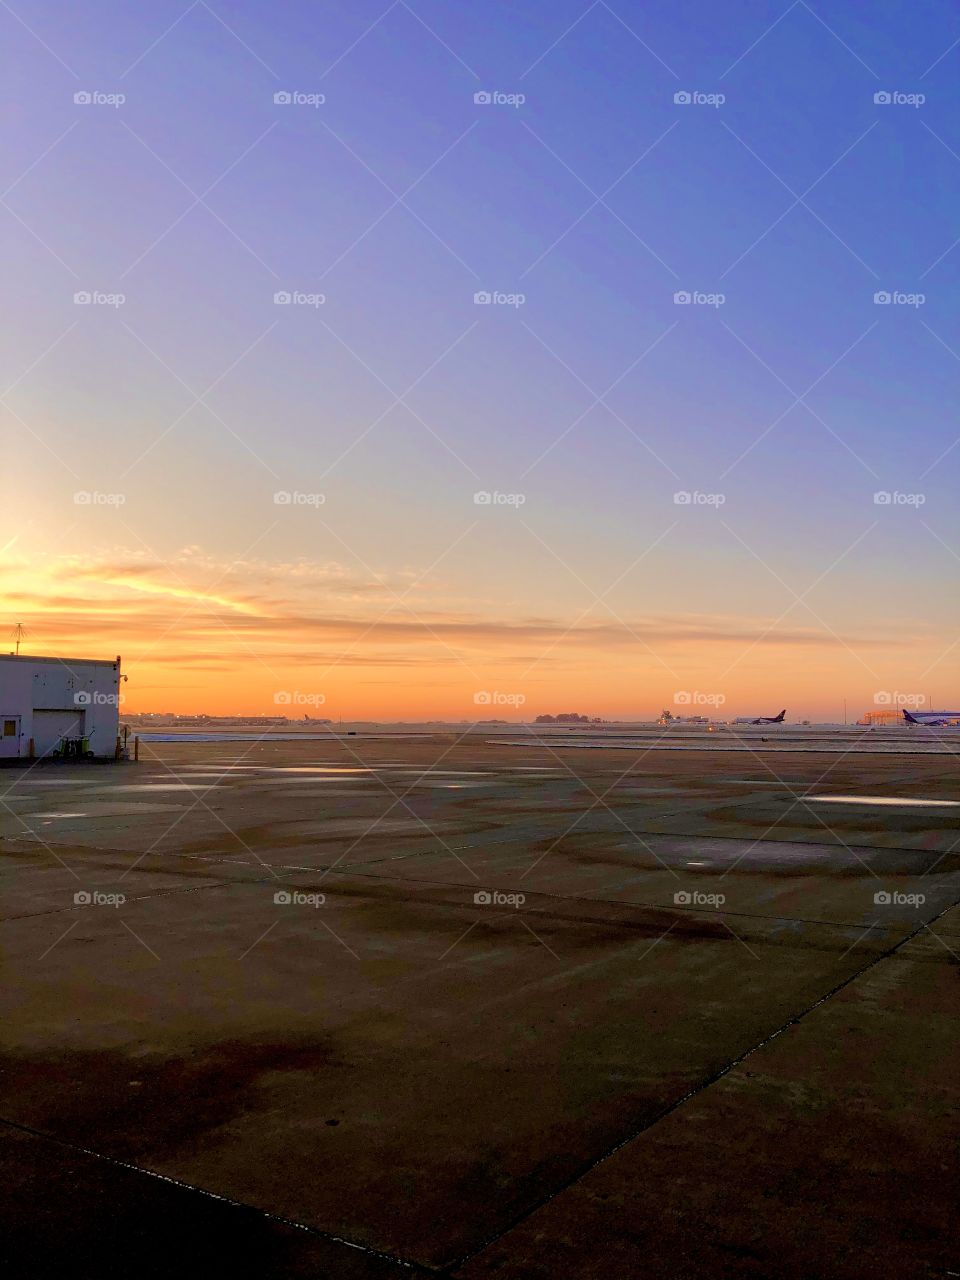 Airport sunrise 